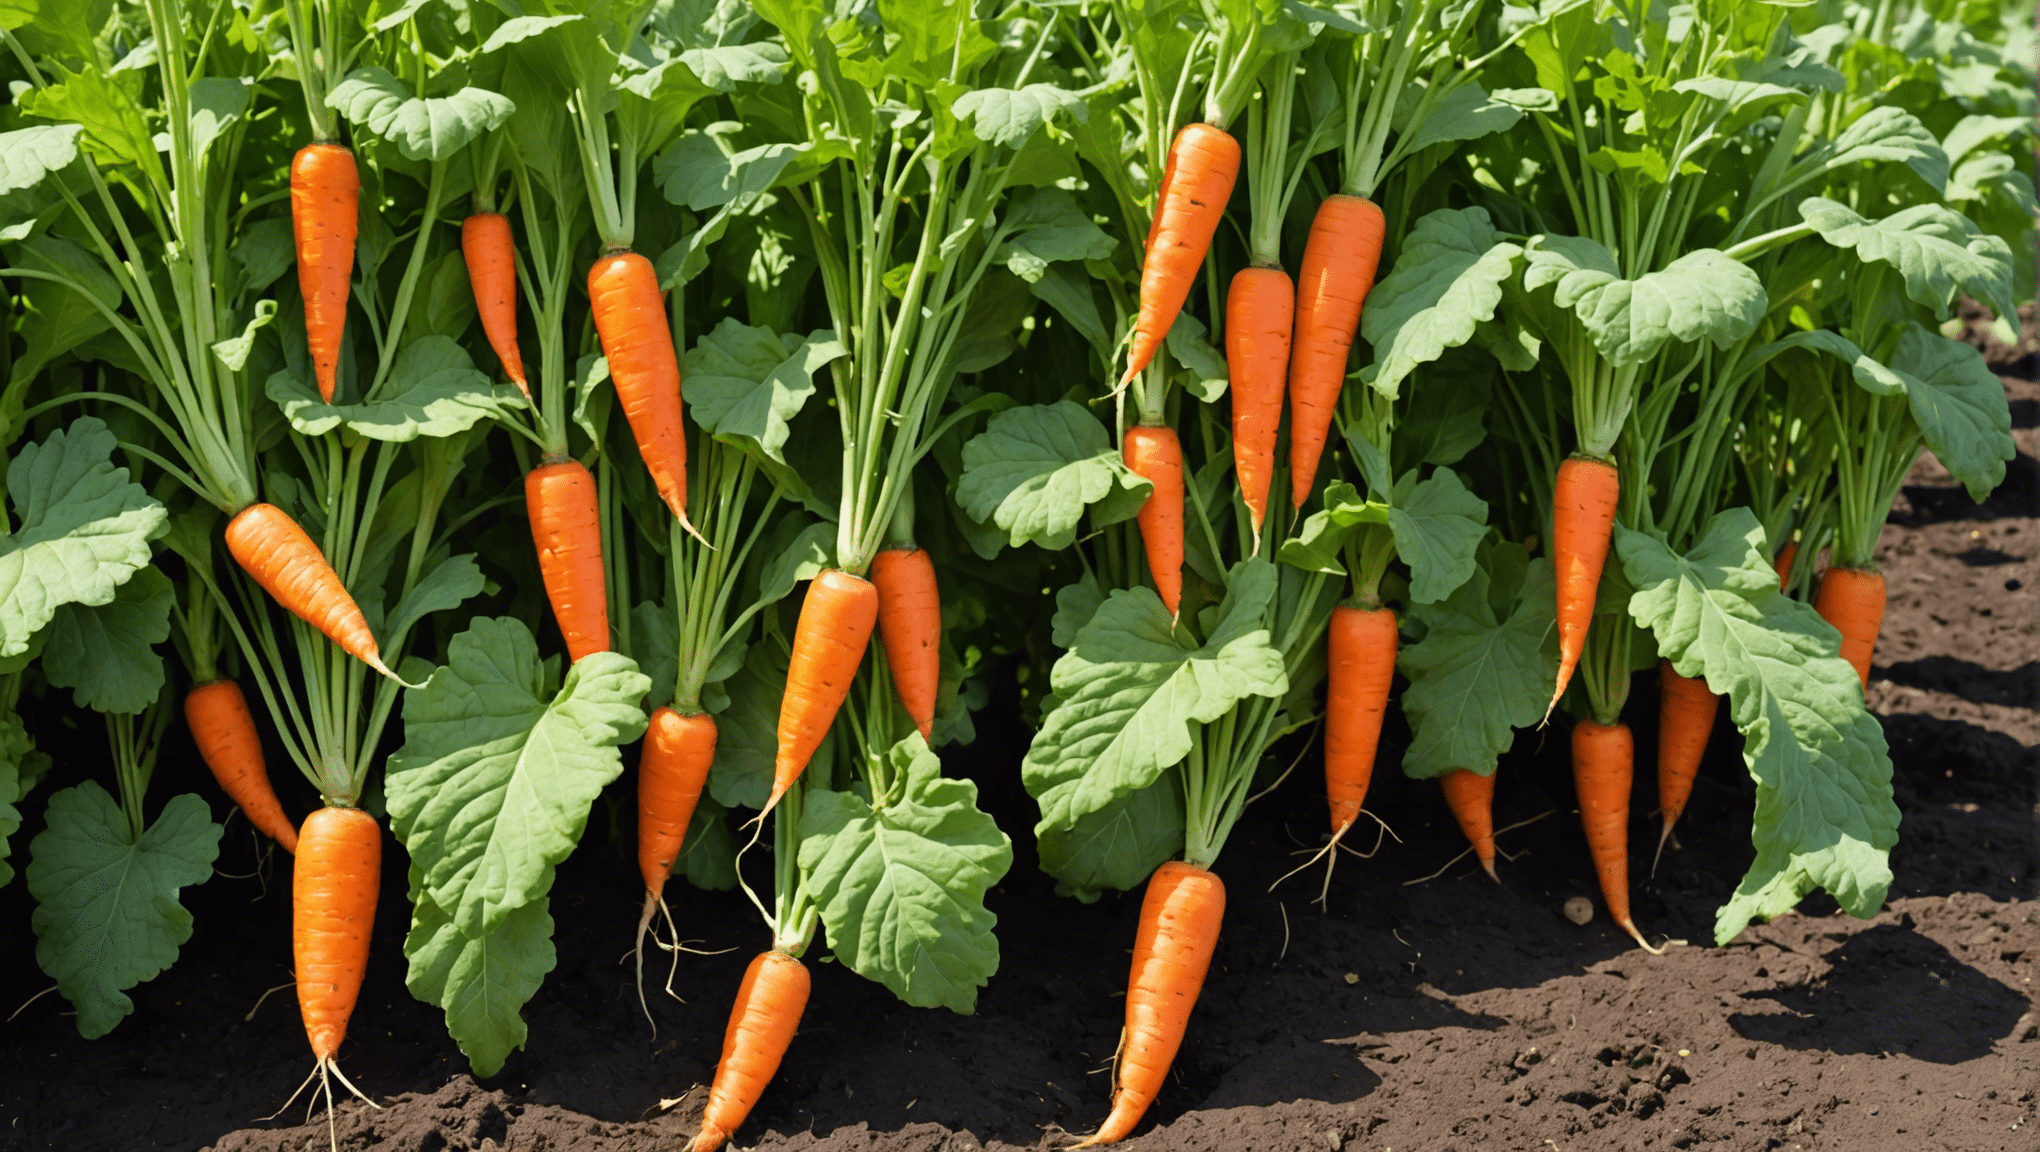 découvrez des conseils pratiques pour augmenter rapidement la production de carottes dans votre potager grâce à nos astuces simples et efficaces.